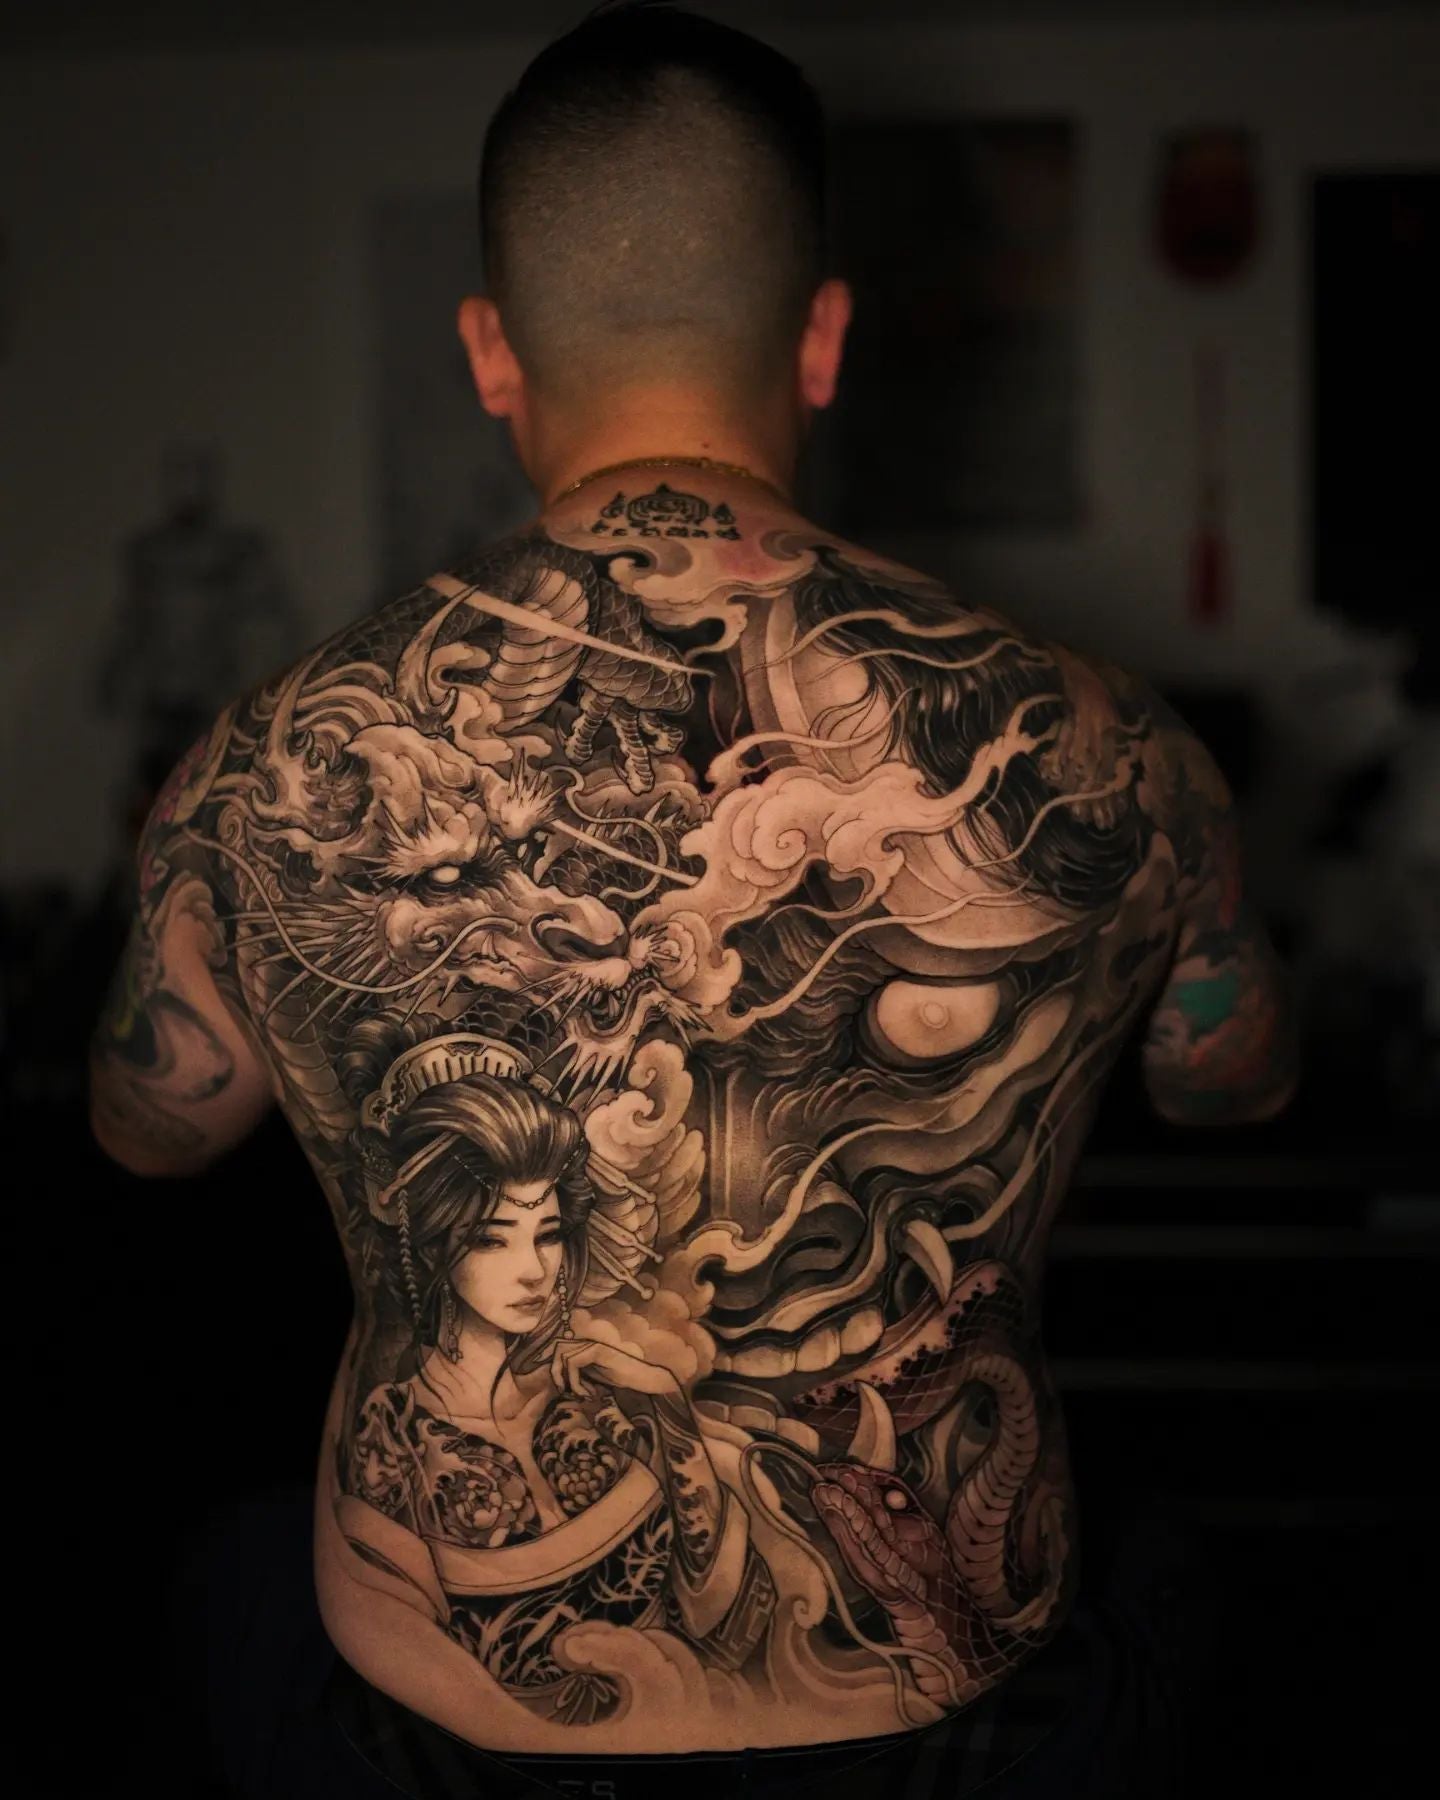 Stunning Dragon Tattoo in Progress at Chronic Ink Tattoo